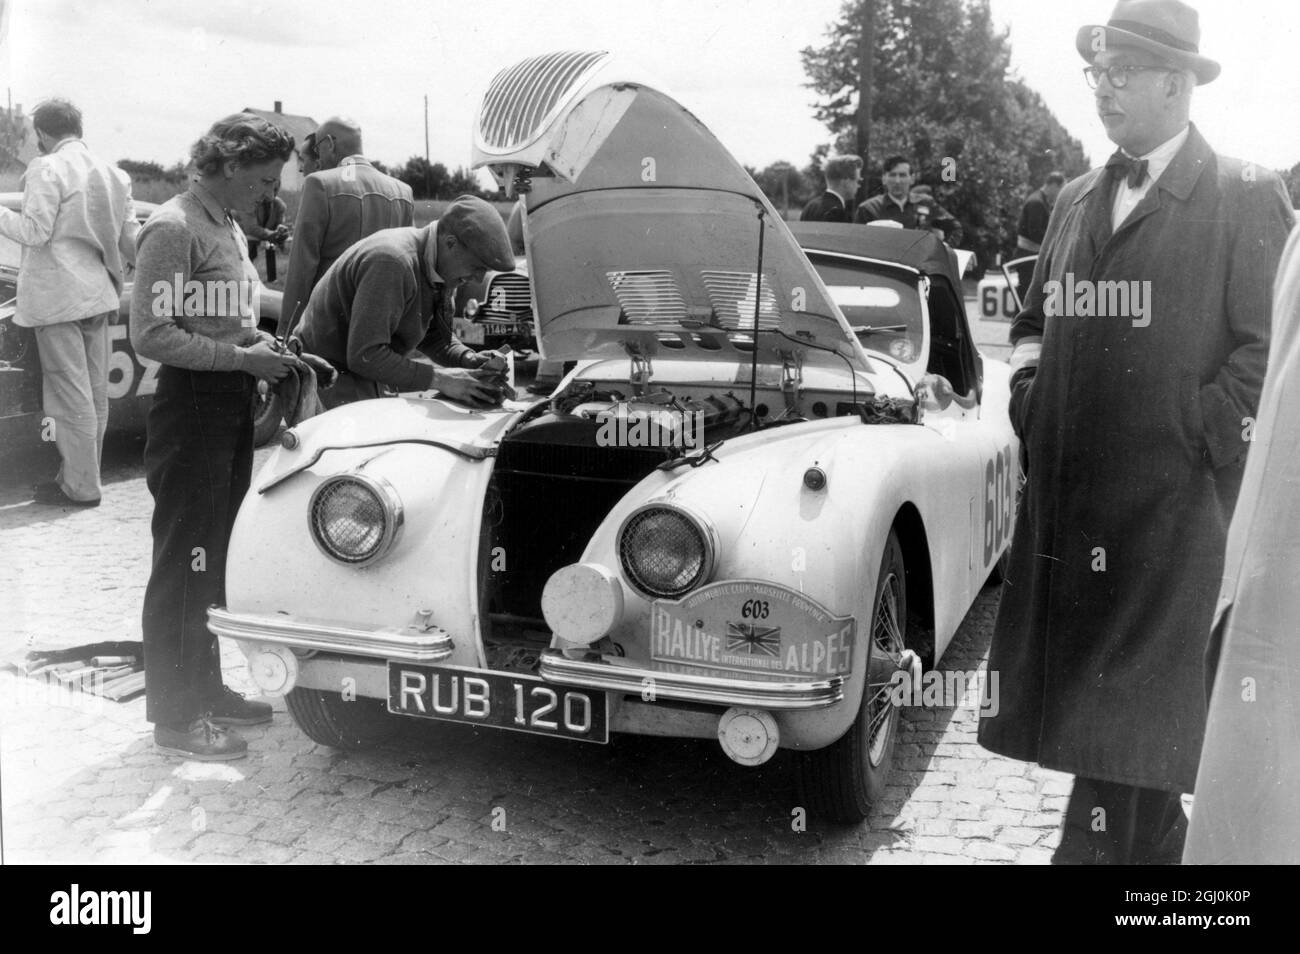 Sallon picture of Ian Appleyard Jaguar Coupe des Alpes